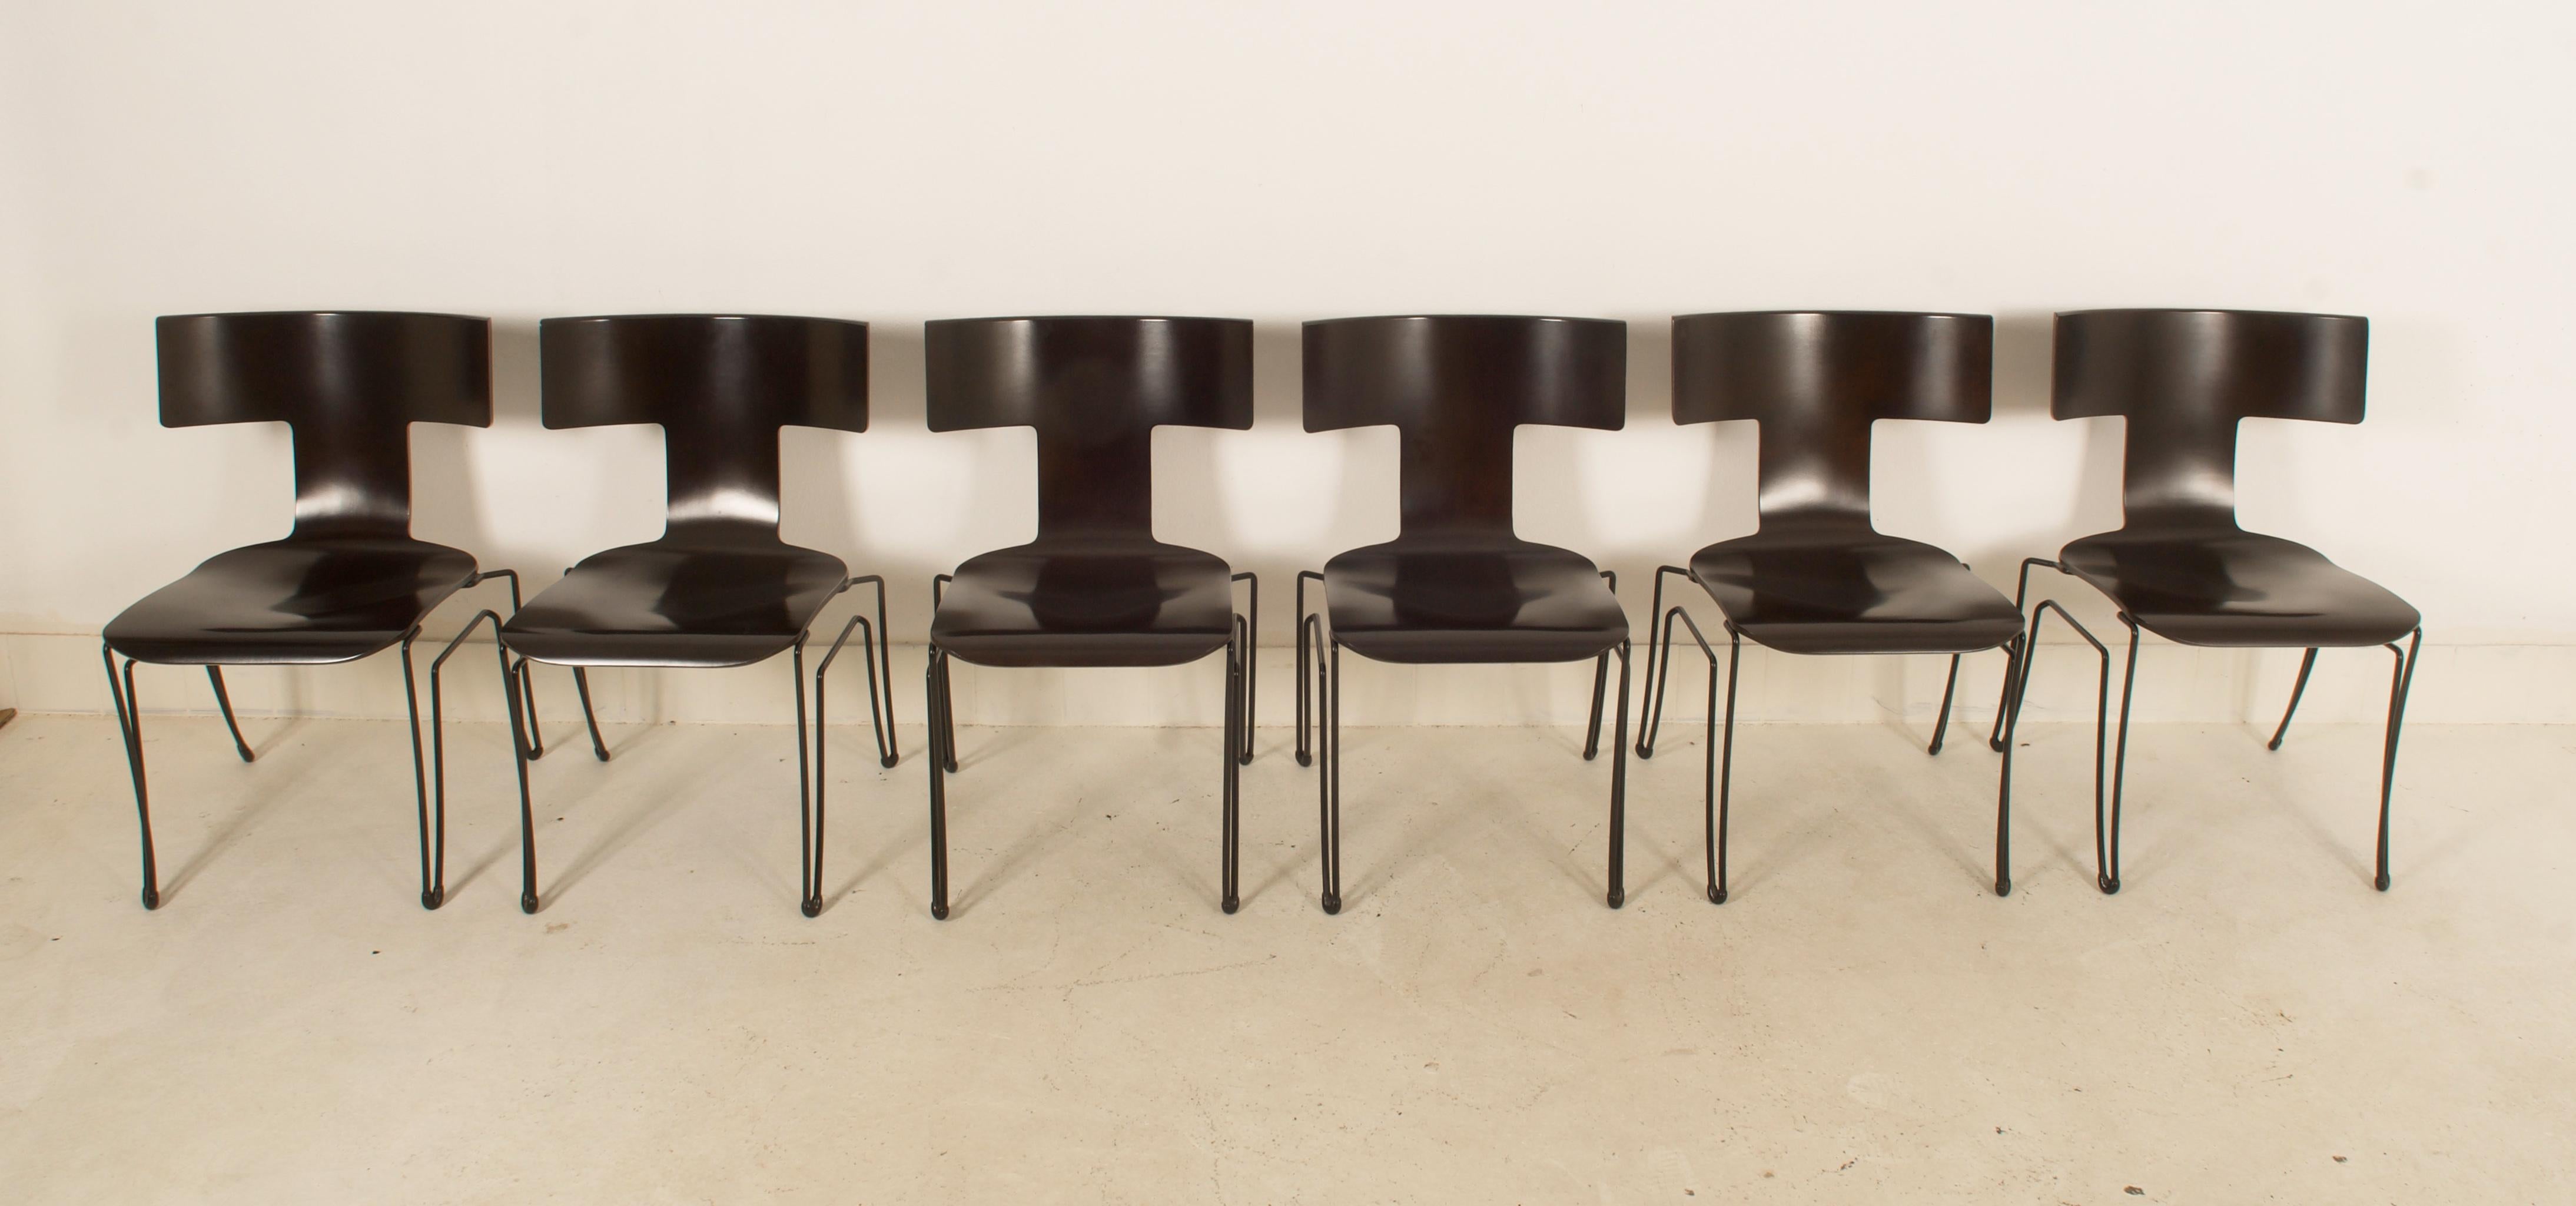 Dieser Satz von 12 Stühlen wurde von Donghia in den 1980er Jahren hergestellt. Das Modell Anziano wurde von John Hutton entworfen. Die Strukturen bestehen aus schwarz beschichtetem Stahldraht, die Sitze sind aus geformtem Buchenholzfurnier